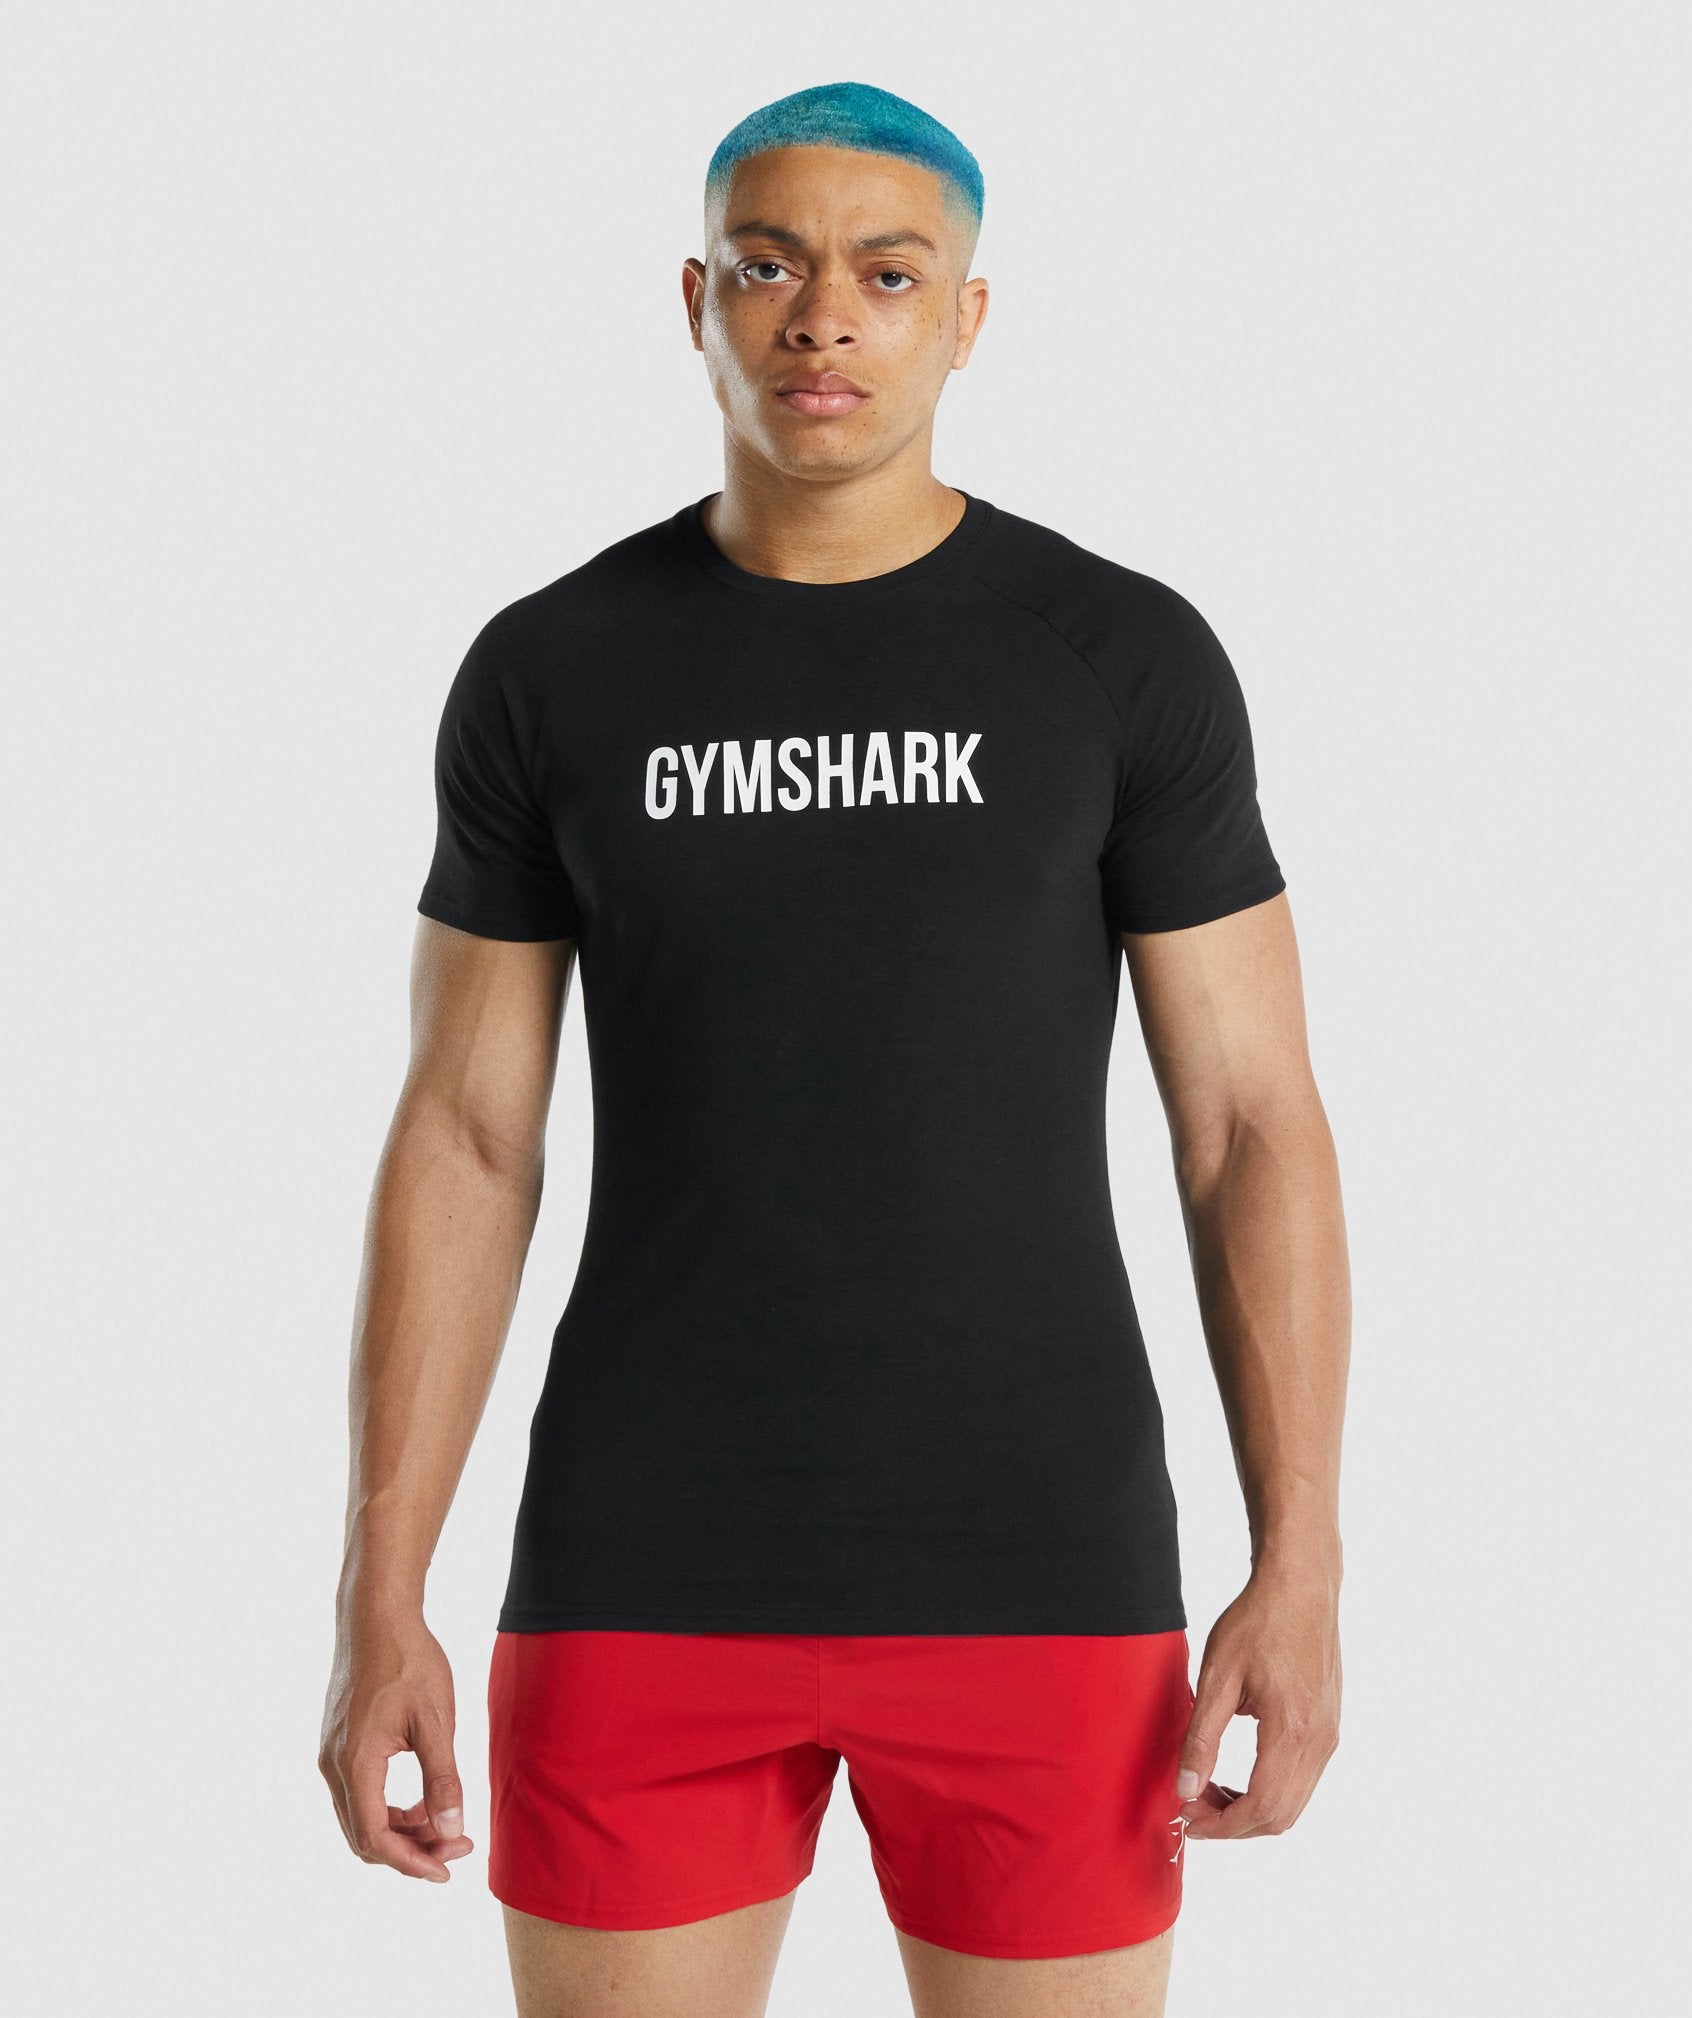 Gymshark Apollo T-Shirt - White